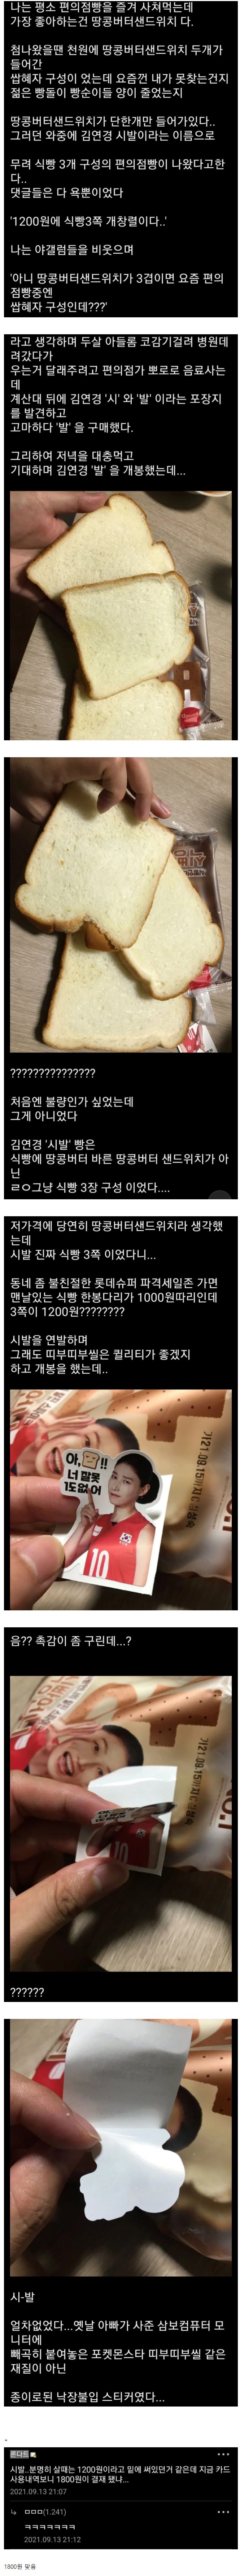 Dishin's honest review of Kim Yeonkyung's bread.